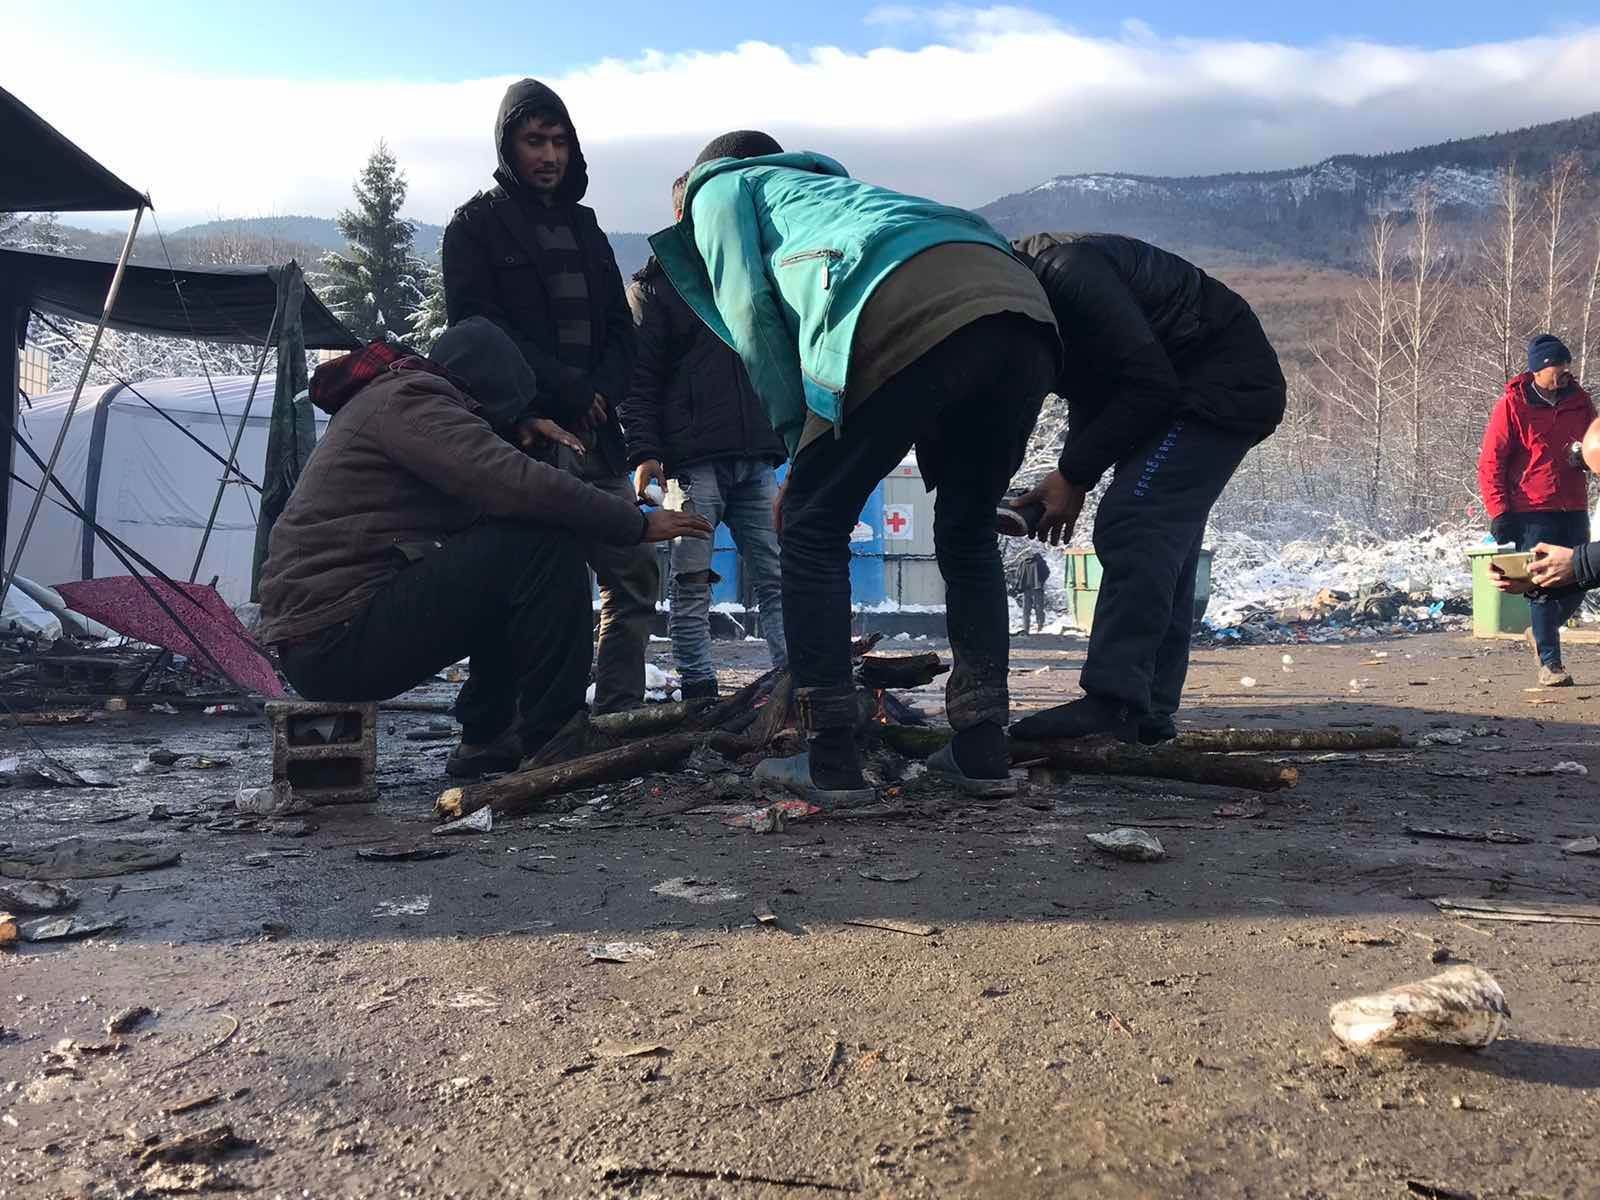  U Bihaću uhapšeno 10 migranata, zaplijenjeni narkotici i noževi 